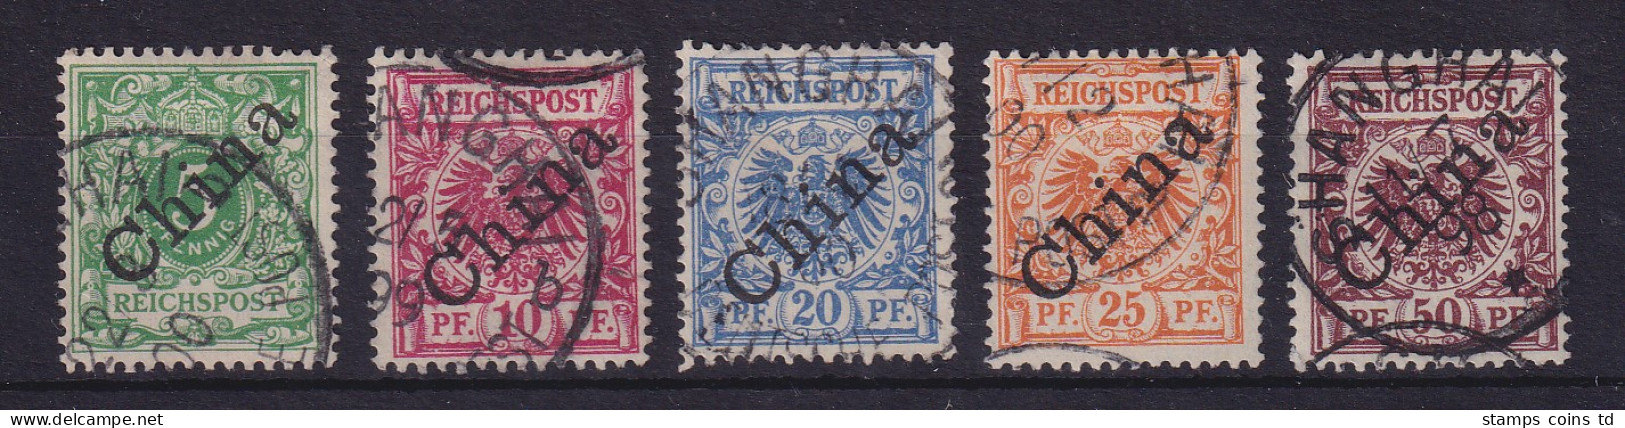 Deutsche Post In China 1898  Mi.-Nr. 2 I - 6 I Gestempelt - China (kantoren)